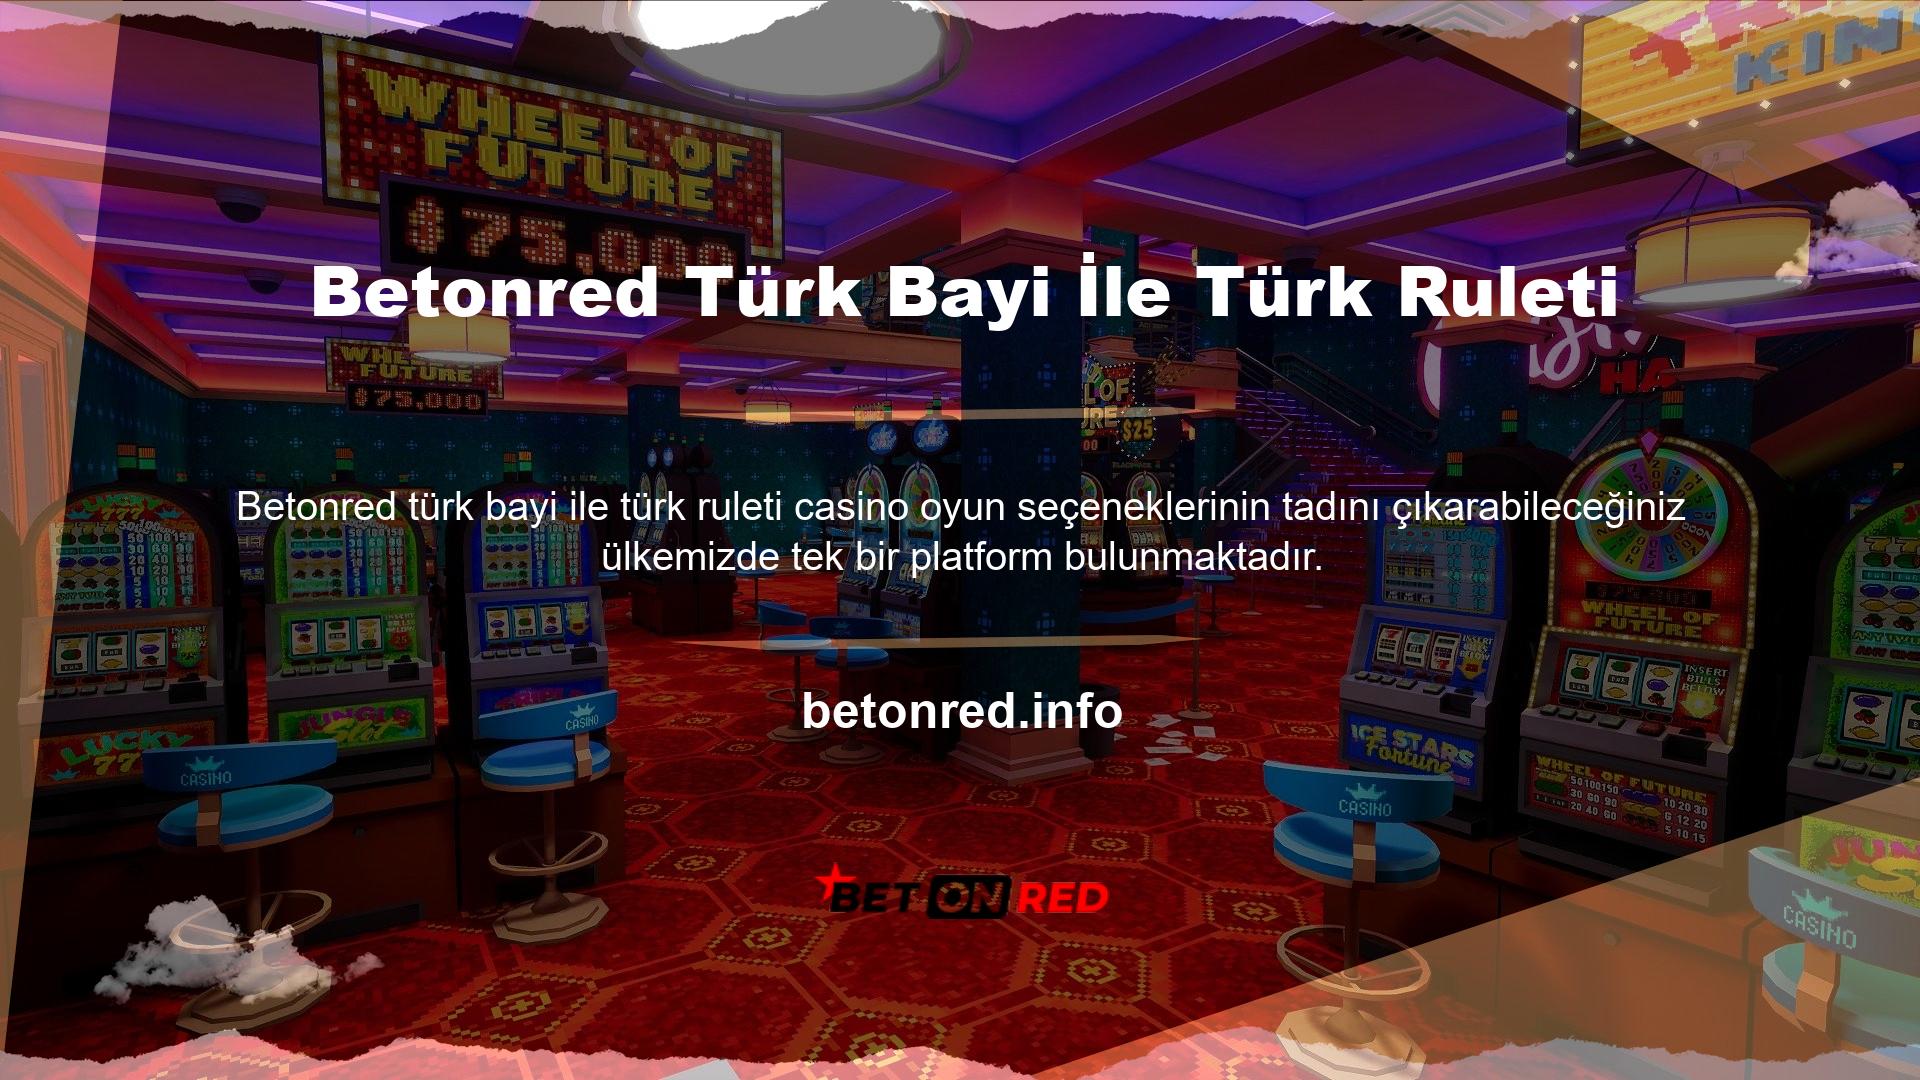 Canlı casino oyun seçeneğini kullanarak Türk krupiyelerine karşı oynama şansına sahipsiniz